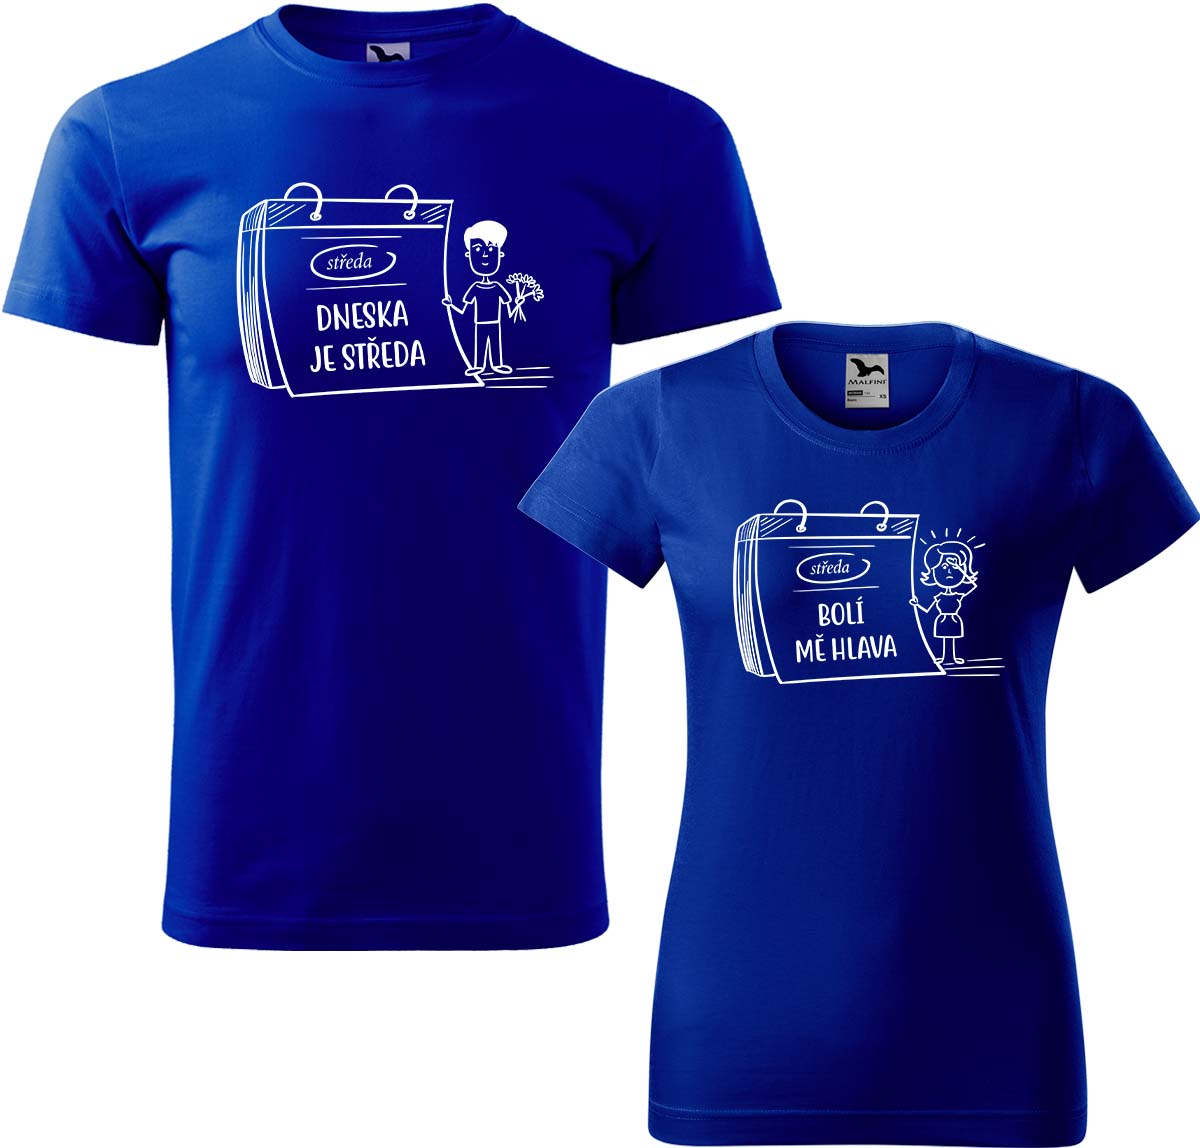 Trička pro páry - Dneska je středa Barva: Královská modrá (05), Velikost dámské tričko: M, Velikost pánské tričko: M